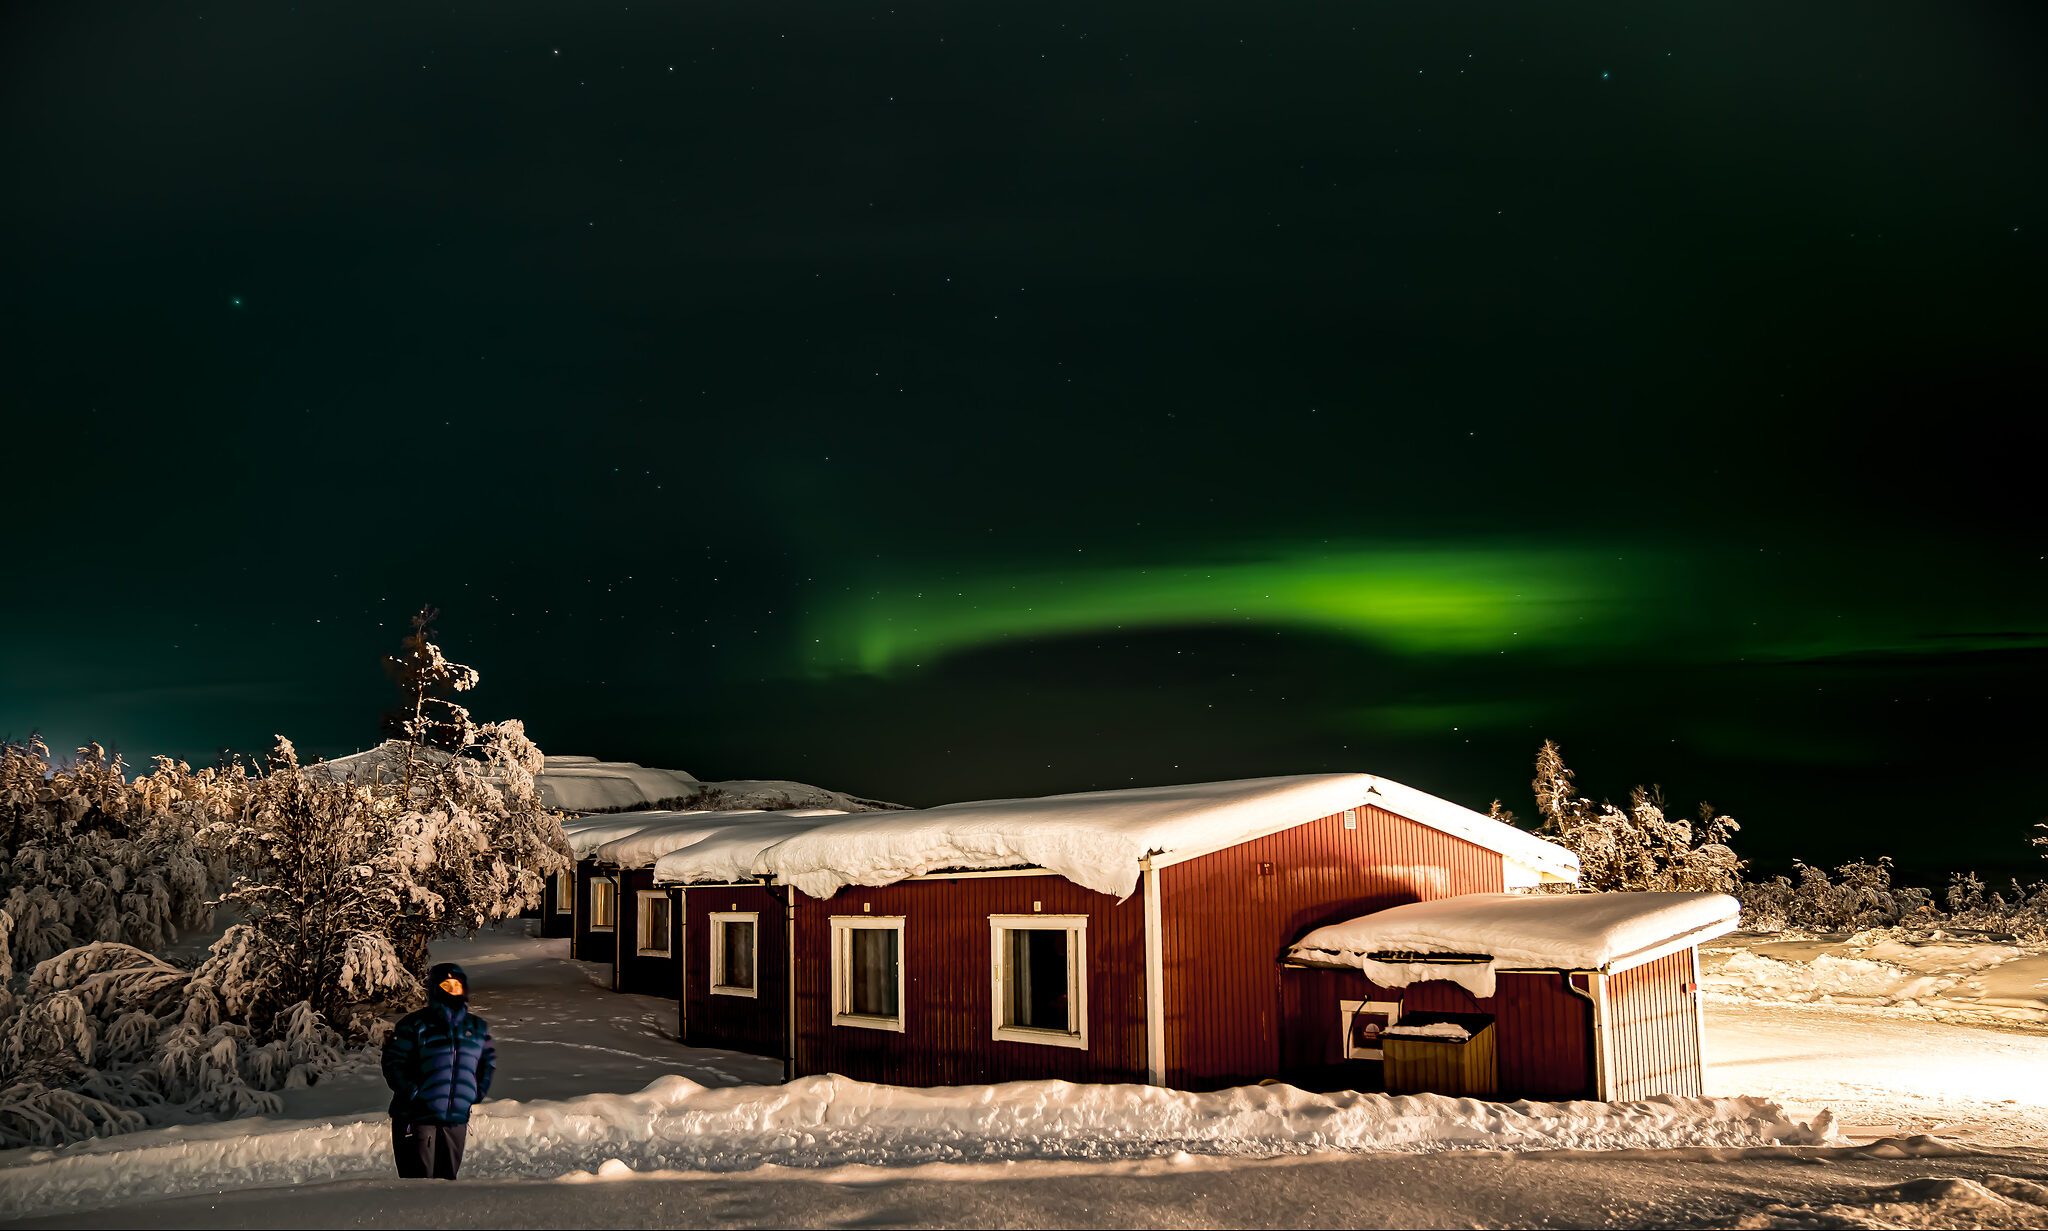 Northern Lights 2019 - Sweden 6.jpeg